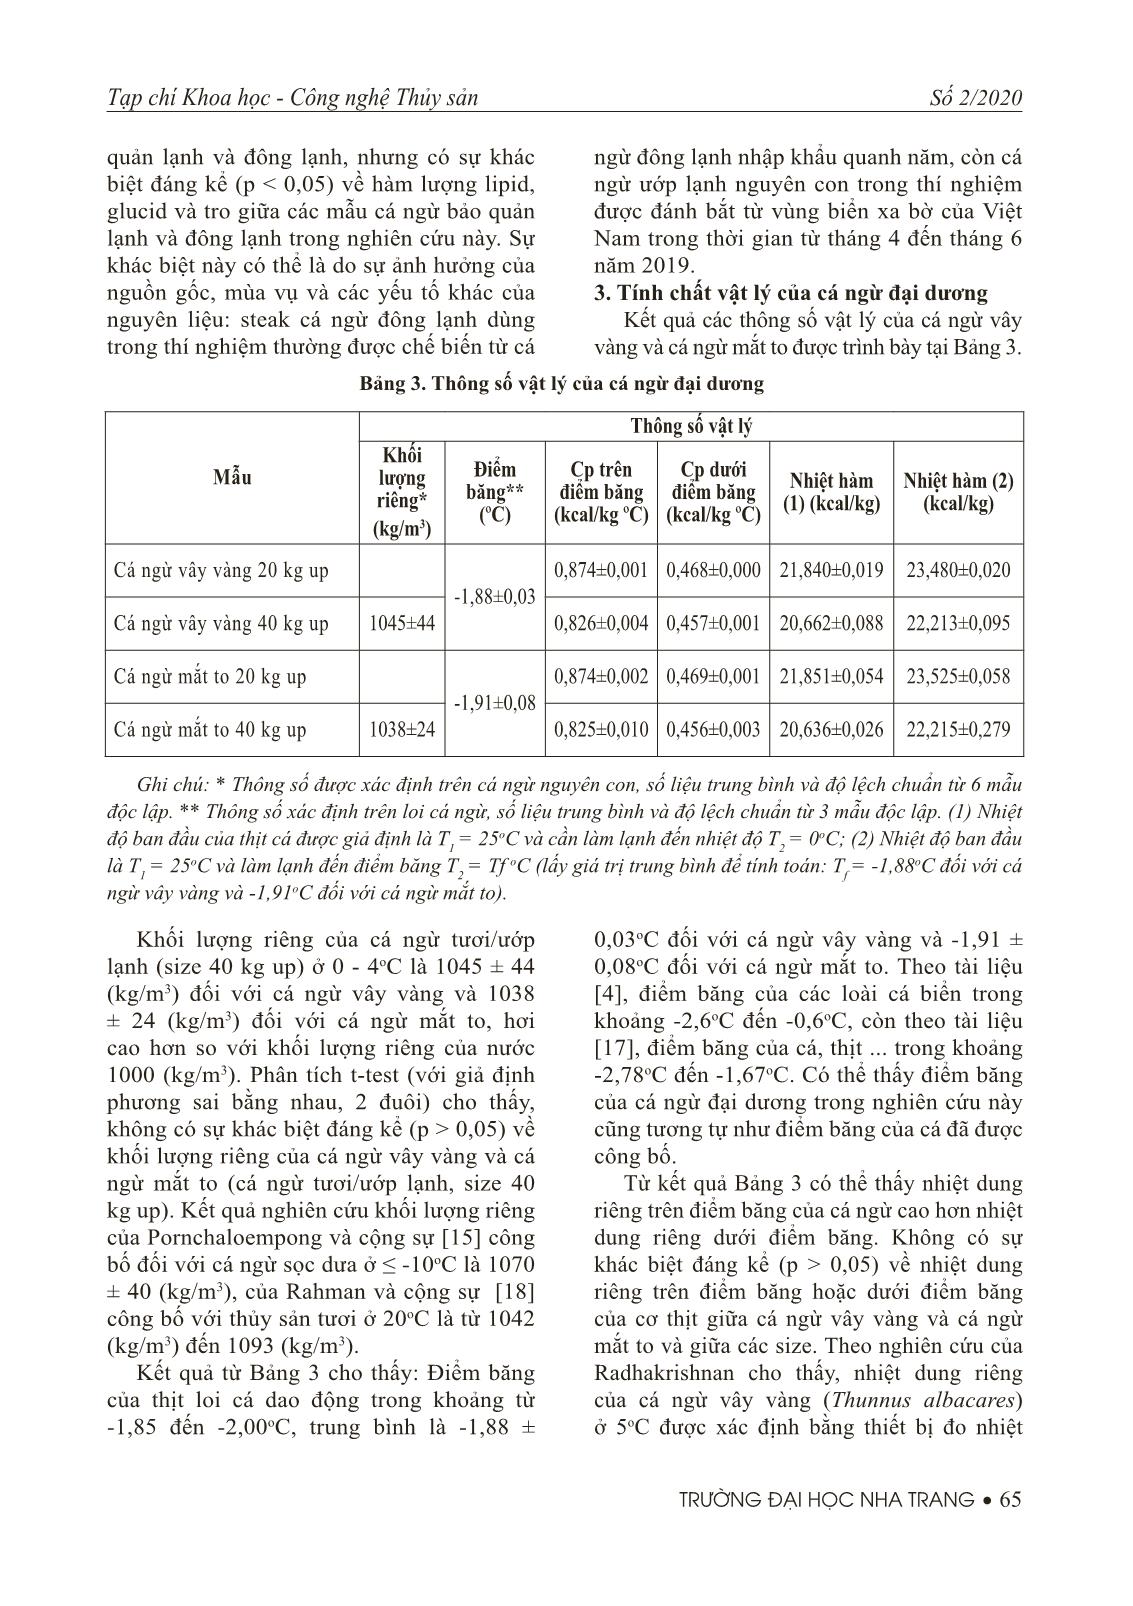 Thành phần hoá học cơ bản và một số tính chất vật lý của cá ngừ đại dương đánh bắt tại Việt Nam trang 7